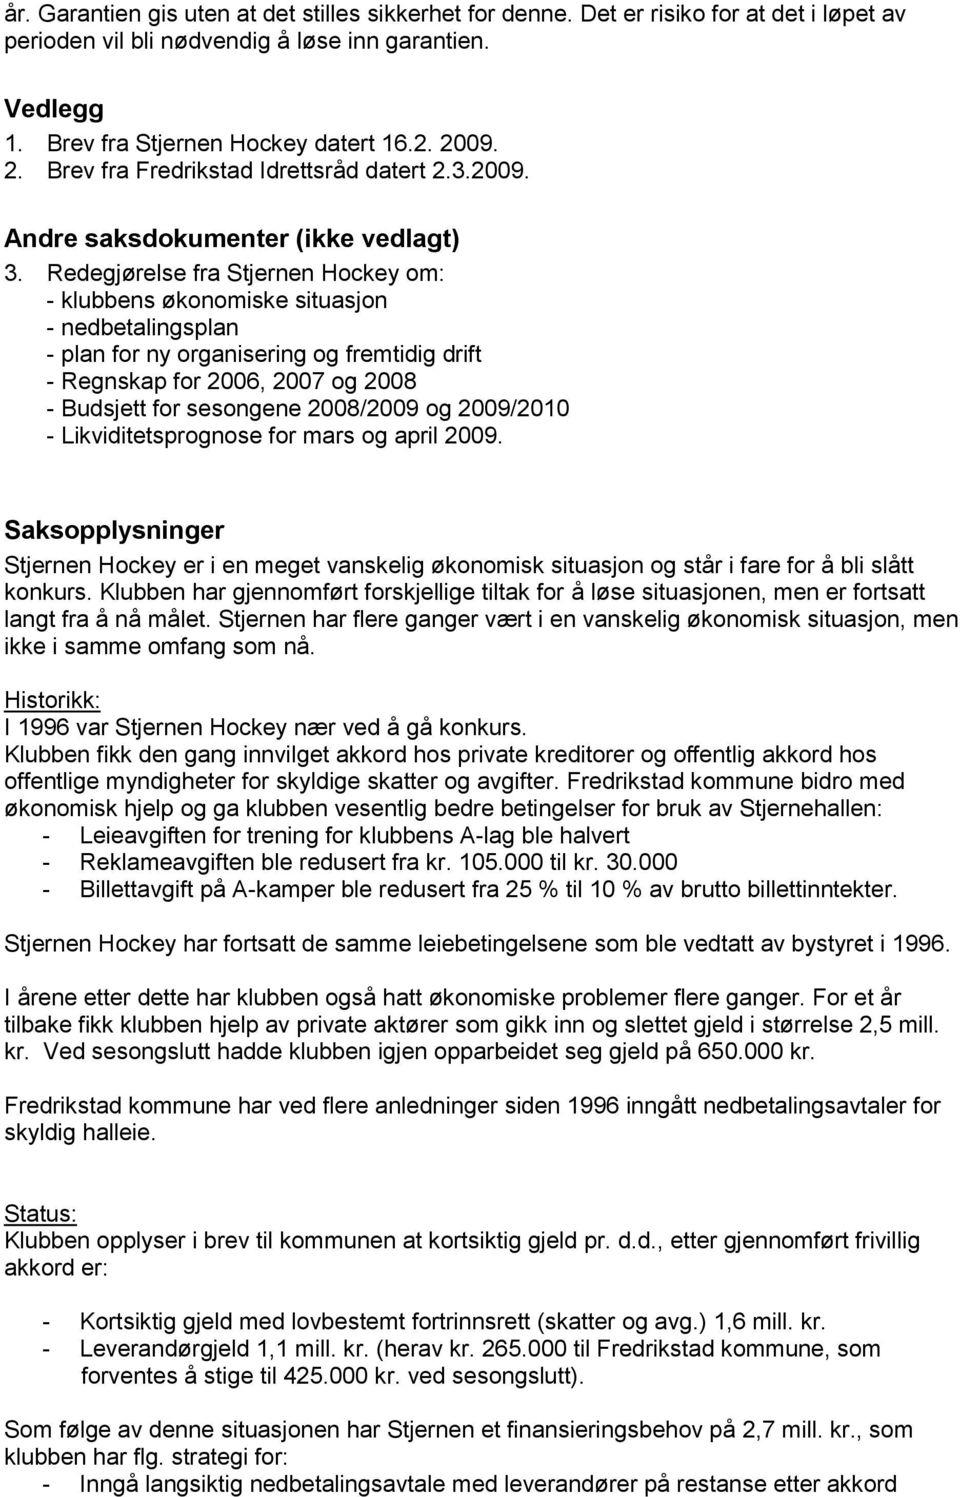 Redegjørelse fra Stjernen Hockey om: - klubbens økonomiske situasjon - nedbetalingsplan - plan for ny organisering og fremtidig drift - Regnskap for 2006, 2007 og 2008 - Budsjett for sesongene